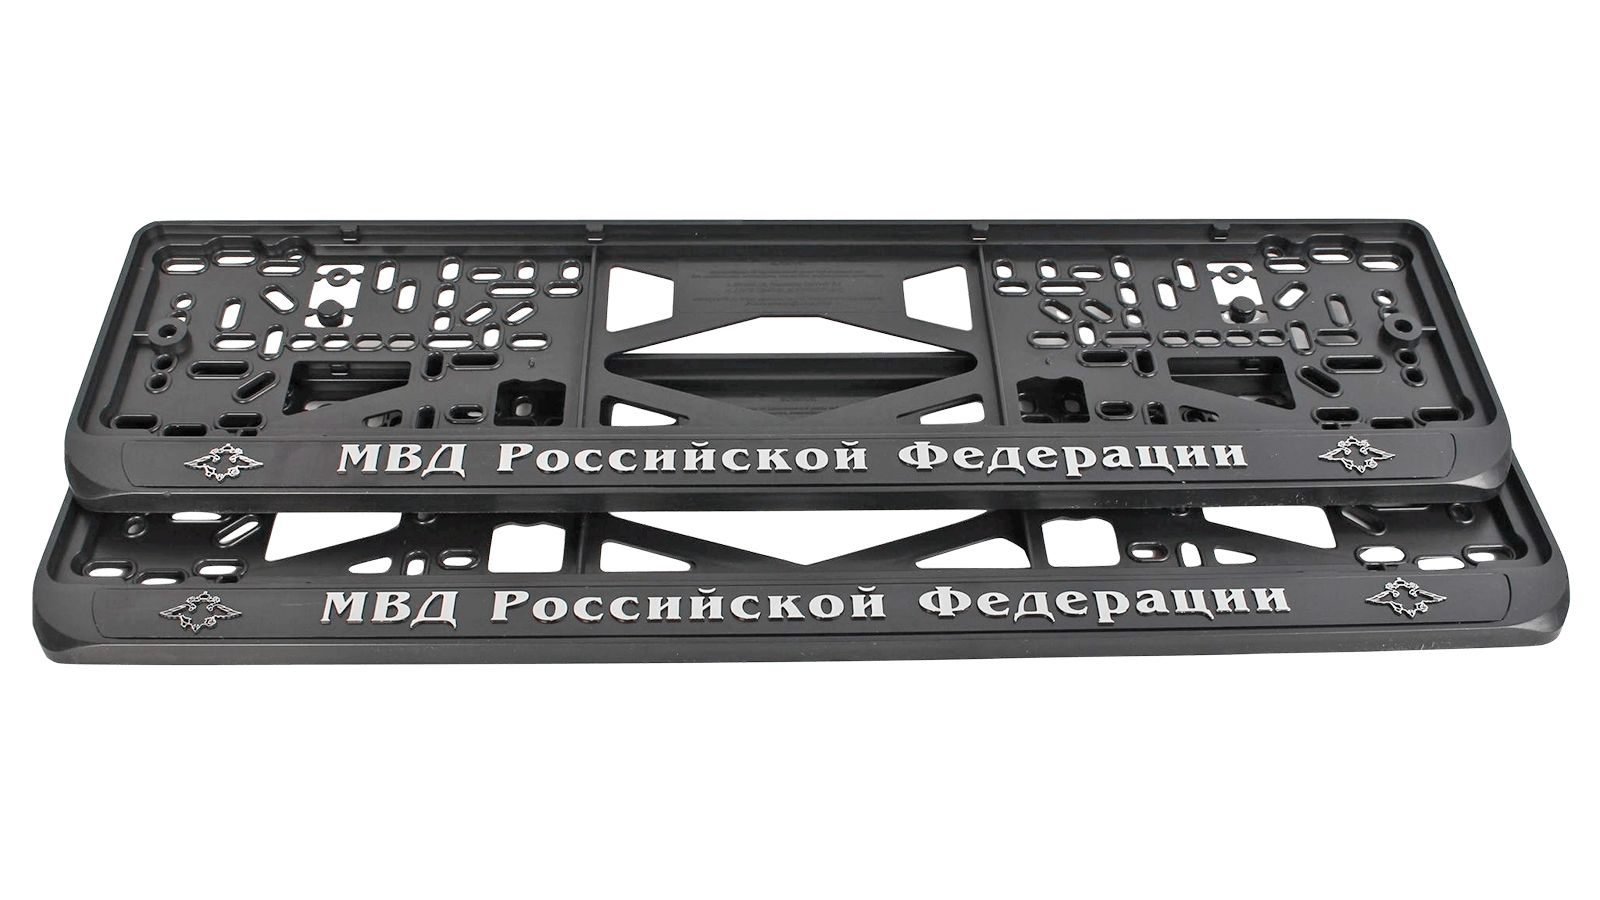 Рамка знака номерного объемная МВД РФ комплект 2 штуки фотография №3